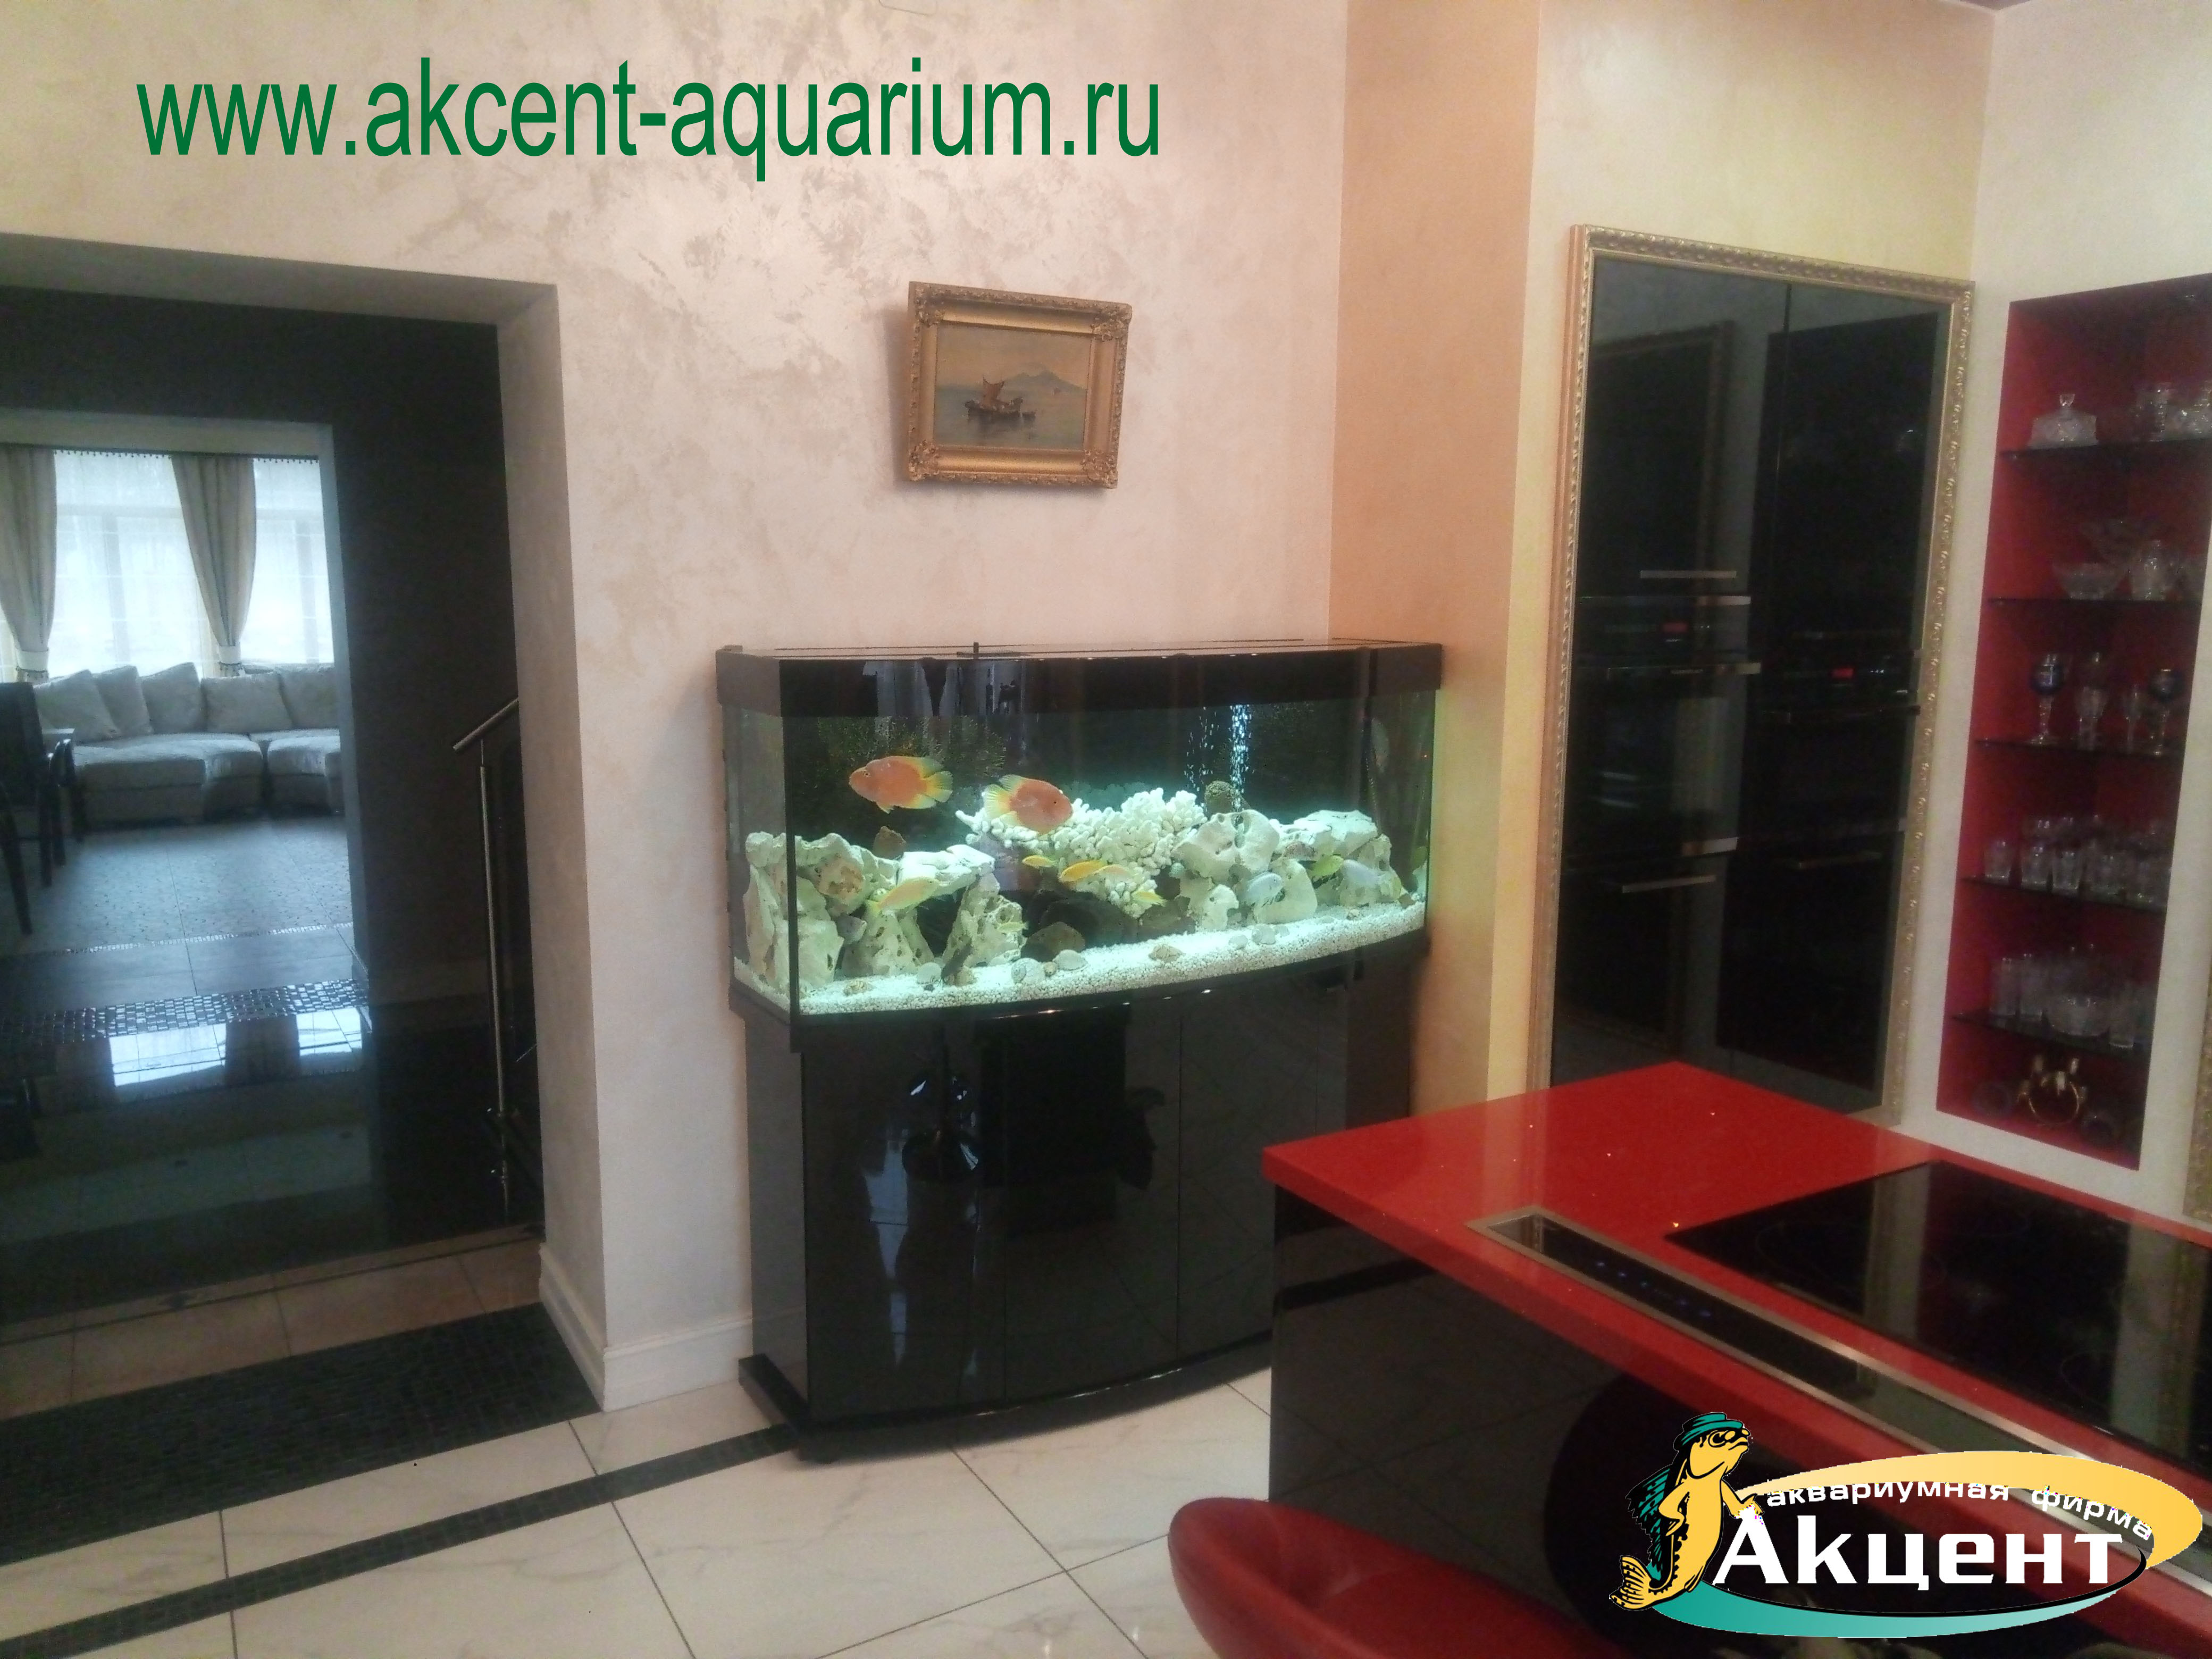 Акцент-аквариум, аквариум 380 литров, с гнутым передним стеклом, акрил